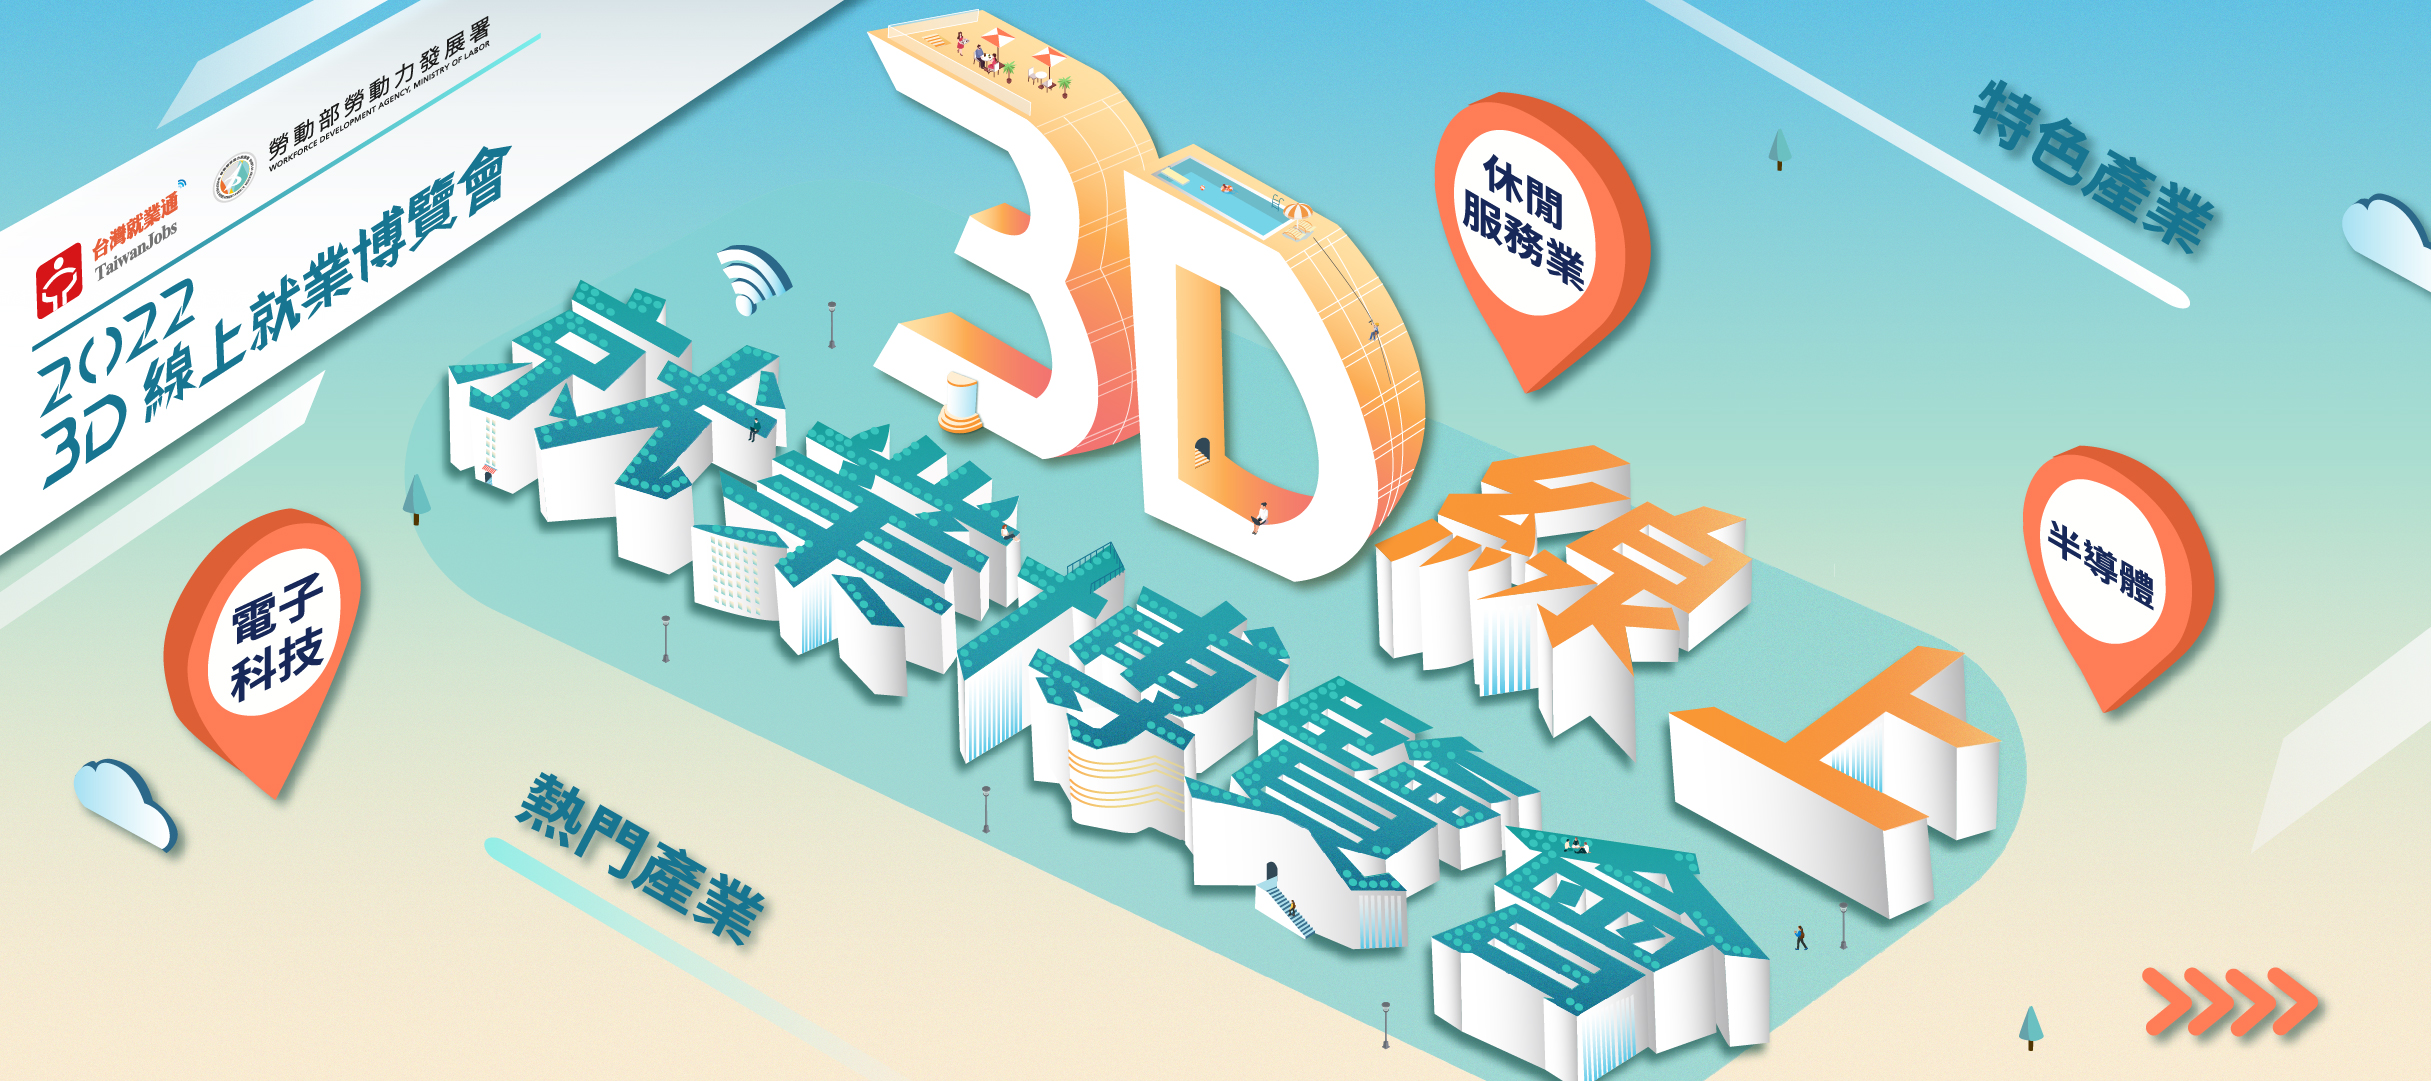 全新求職體驗，台灣就業通3D線上就業博覽會首次登場！